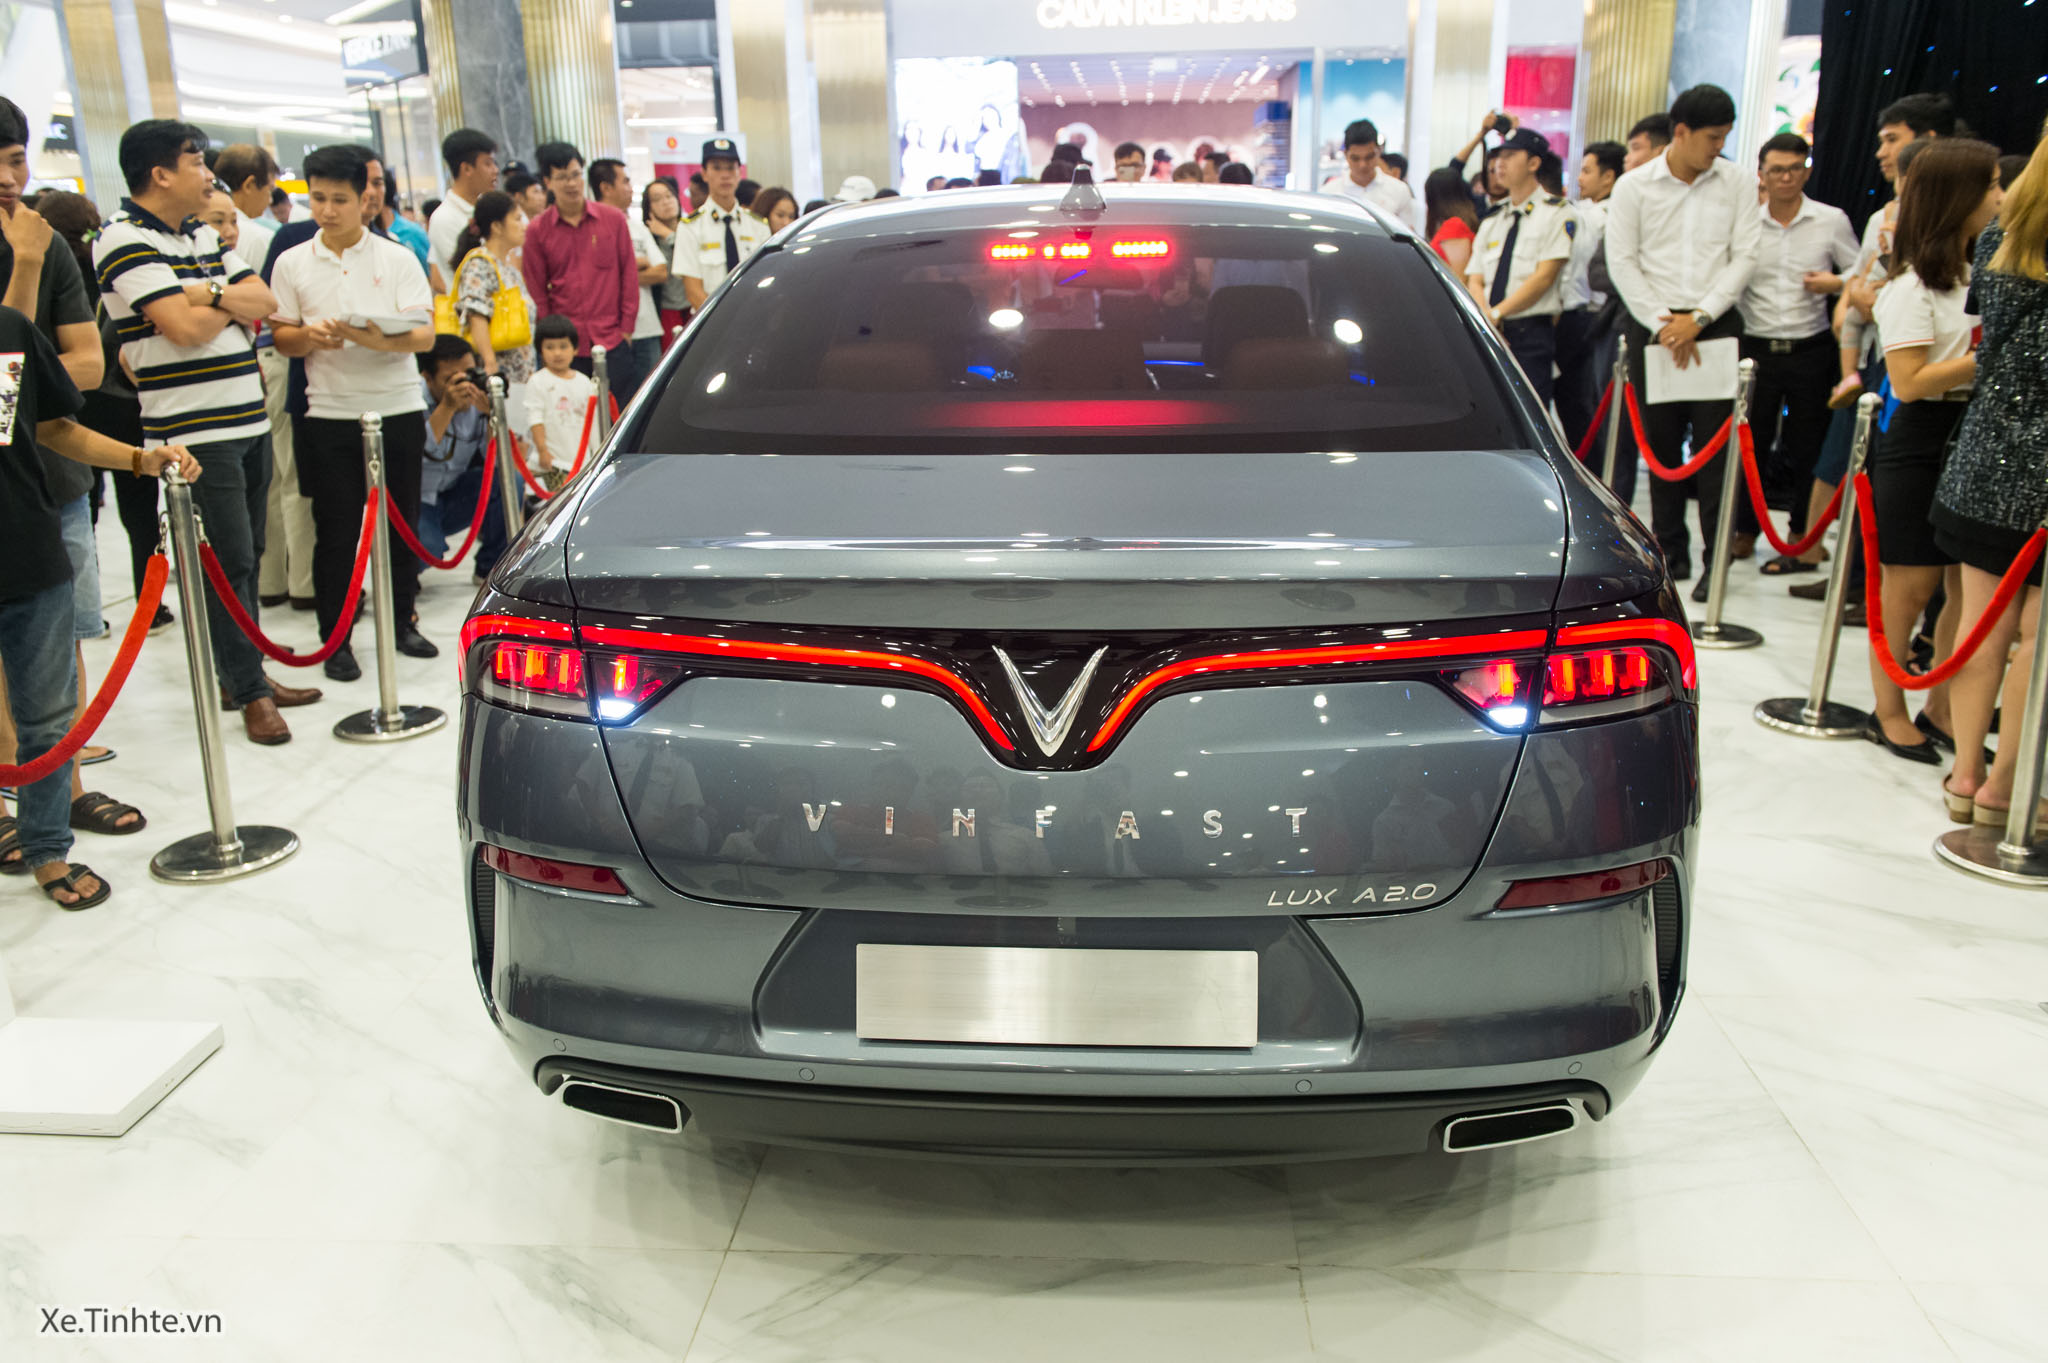 VinFast - thương hiệu xe Việt đã gây tiếng vang lớn trên thị trường ô tô. Không chỉ hiện đại về thiết kế và công nghệ, VinFast còn đem lại cảm giác an toàn và tin cậy khi lái xe. Hãy xem ngay hình ảnh xe VinFast để khám phá những tính năng nổi bật và độc đáo của các dòng xe.